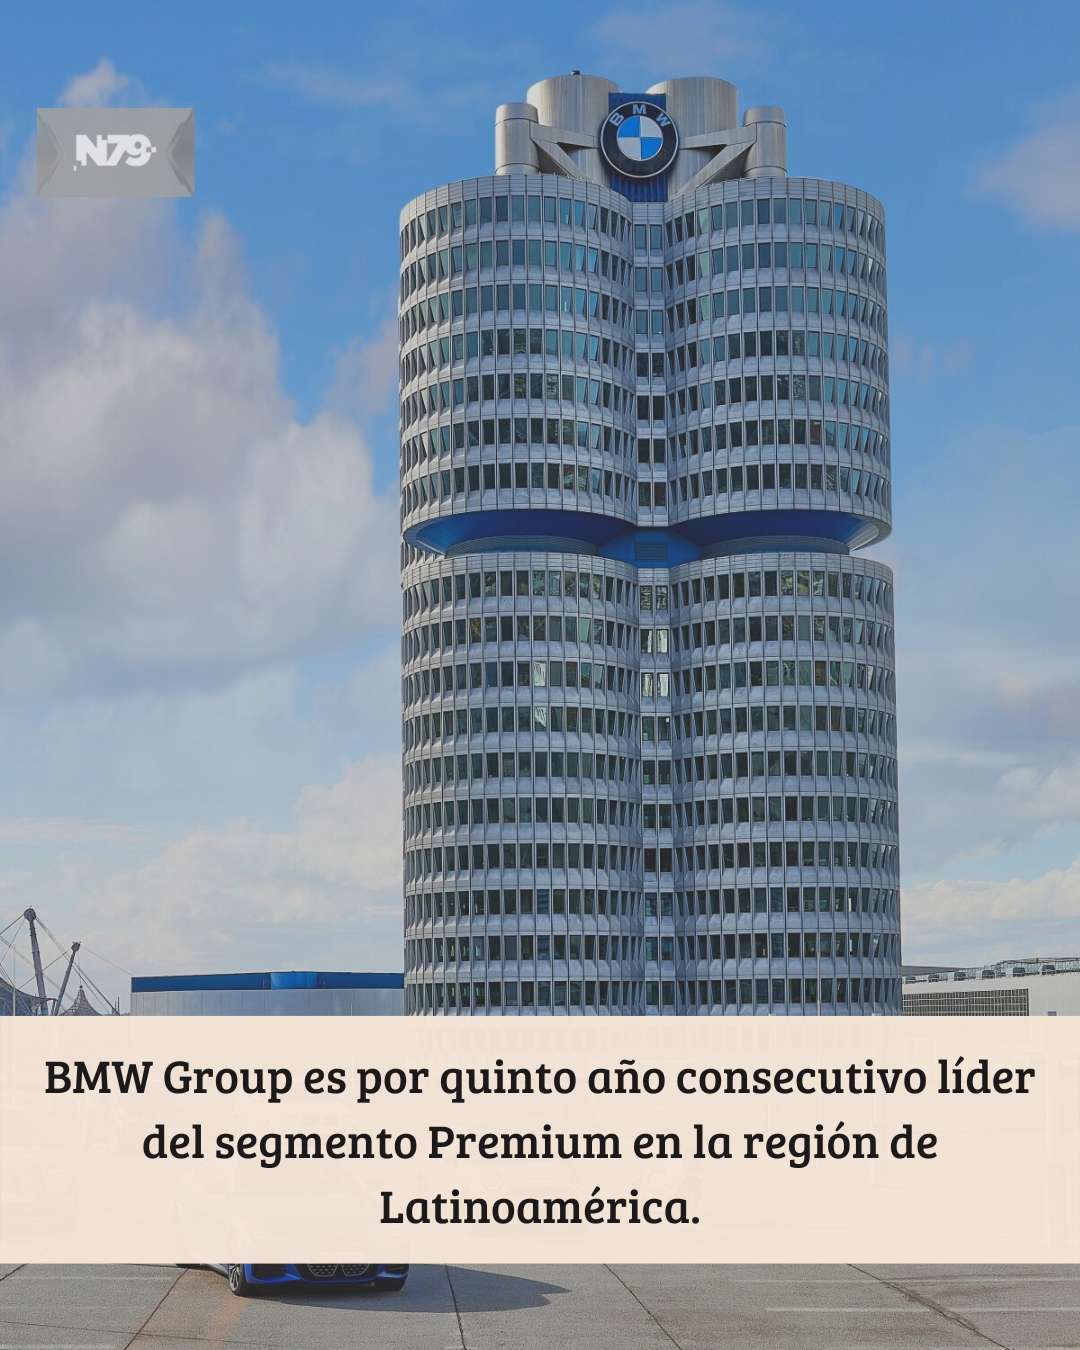 BMW Group es por quinto año consecutivo líder del segmento Premium en la región de Latinoamérica.